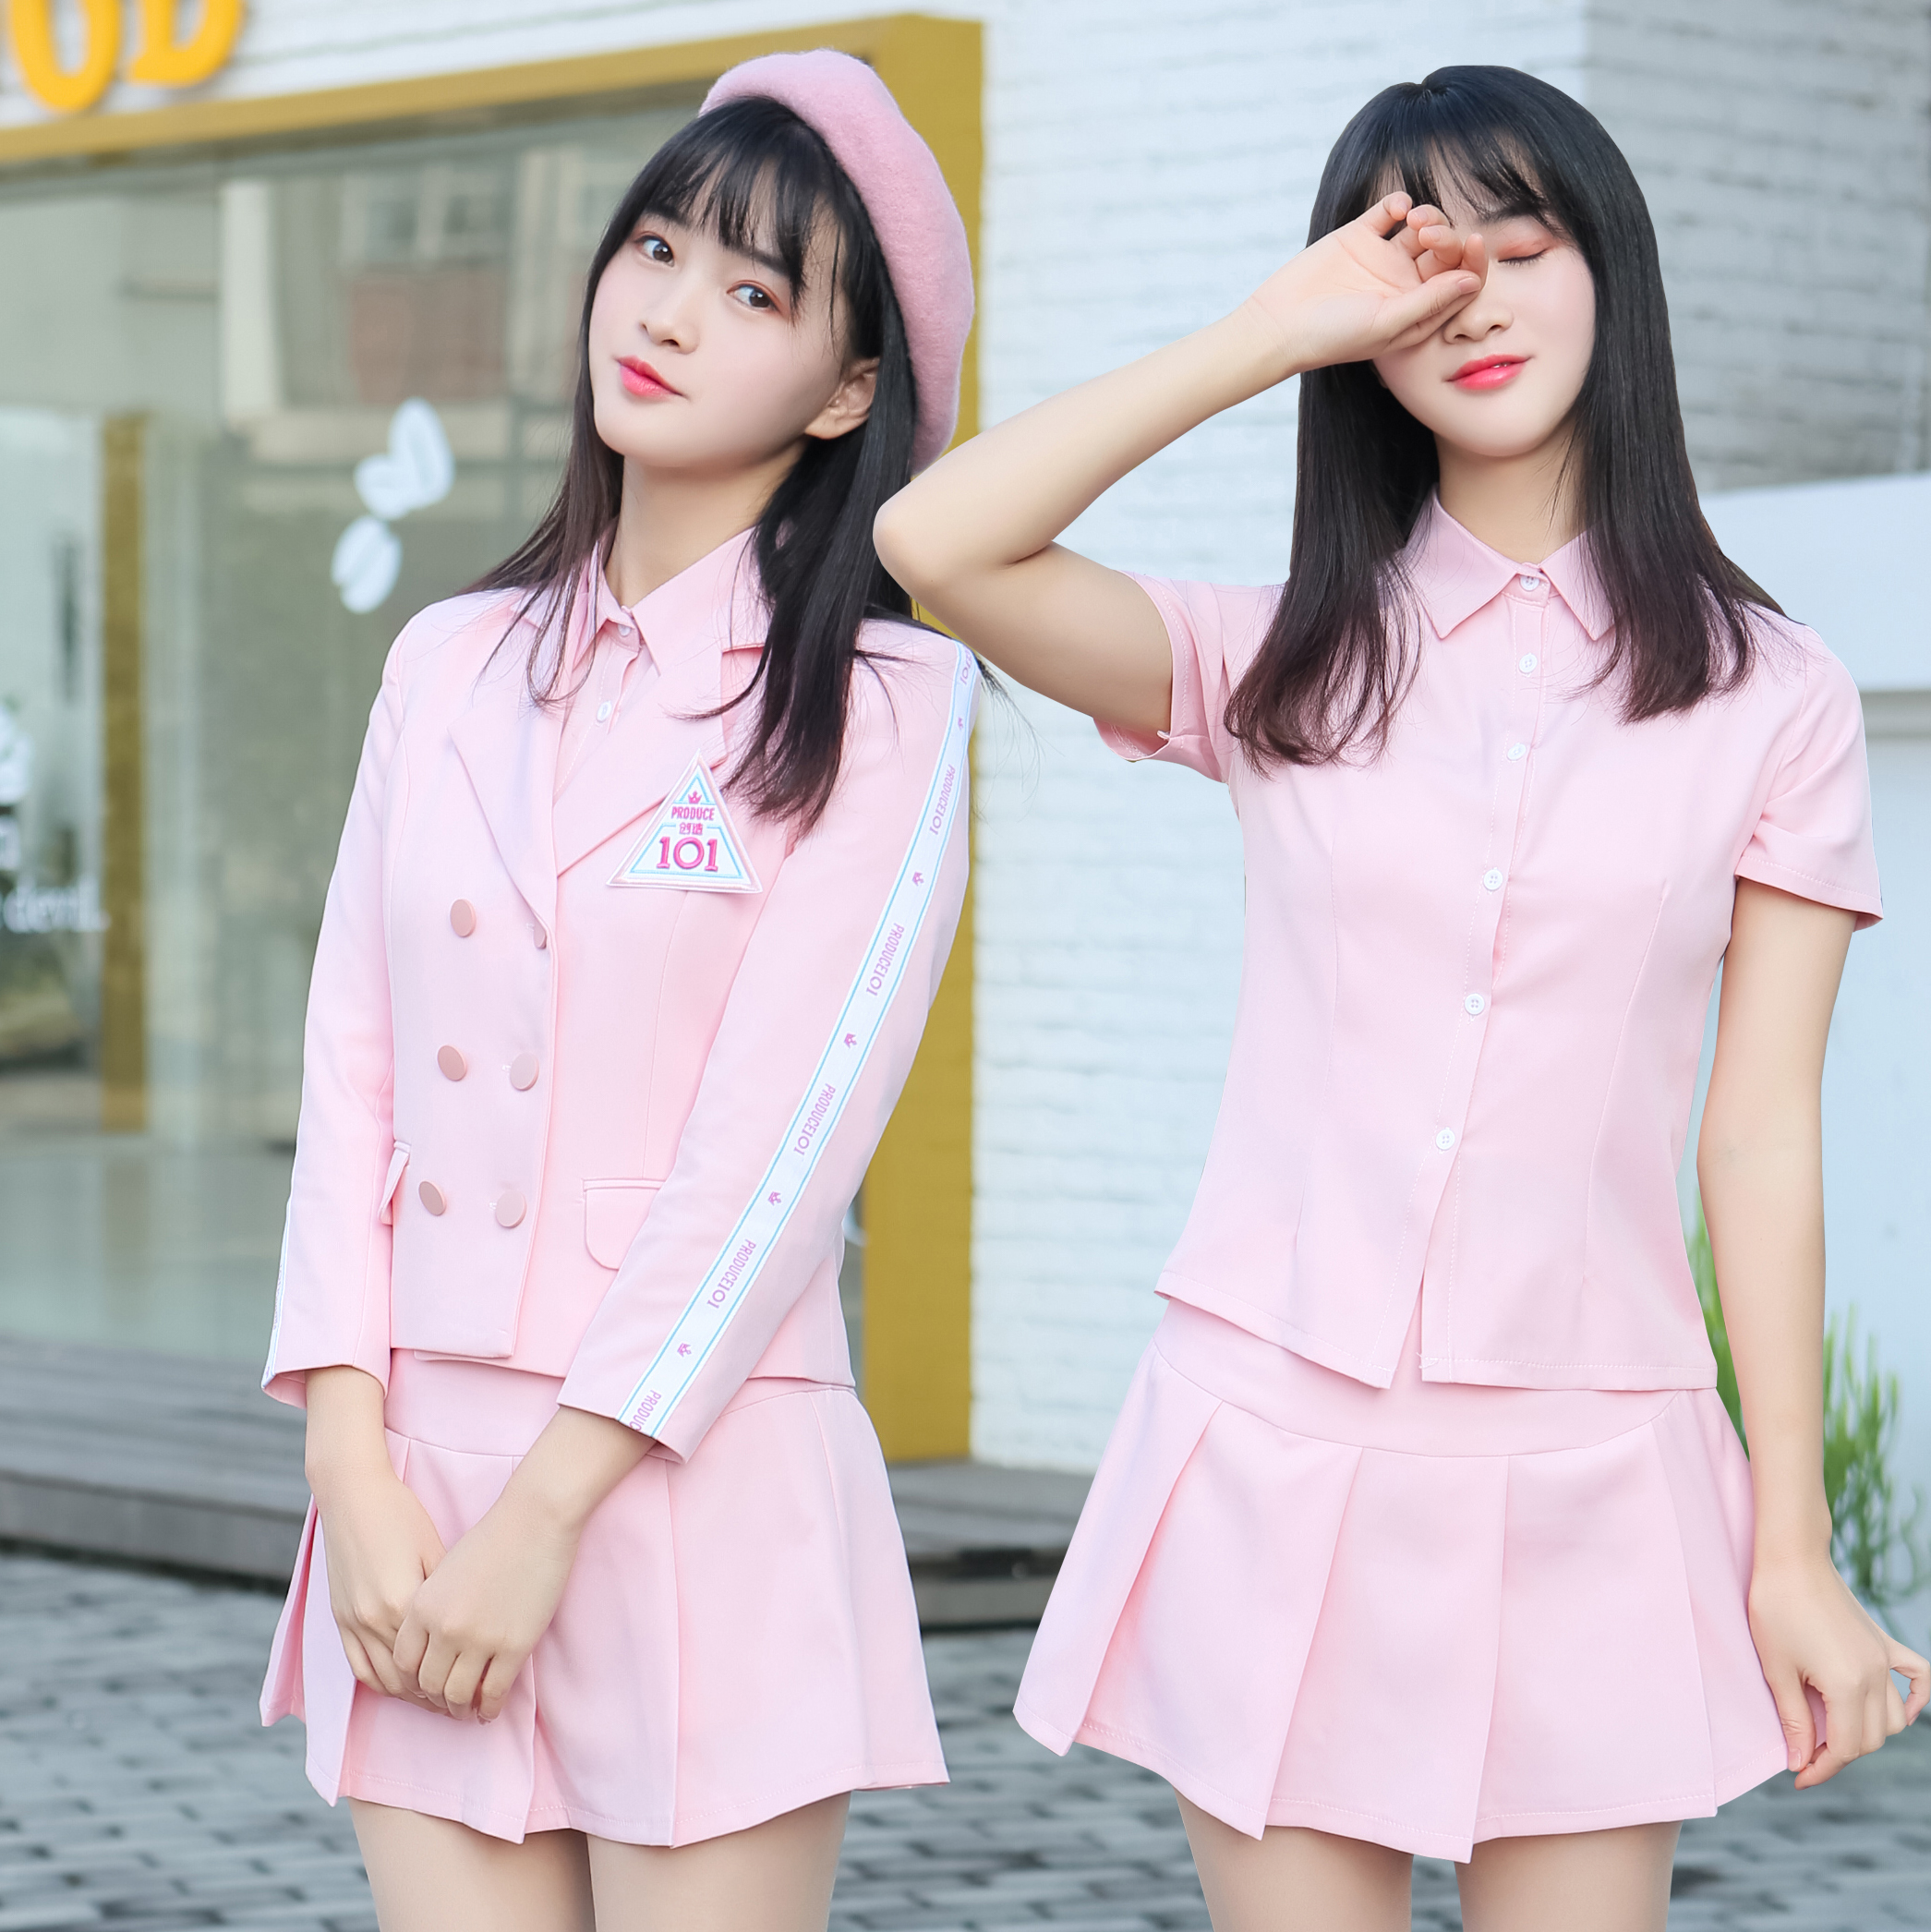 火箭少女创造101同款粉色西装套装 和平精英同款演出服班服吃鸡服